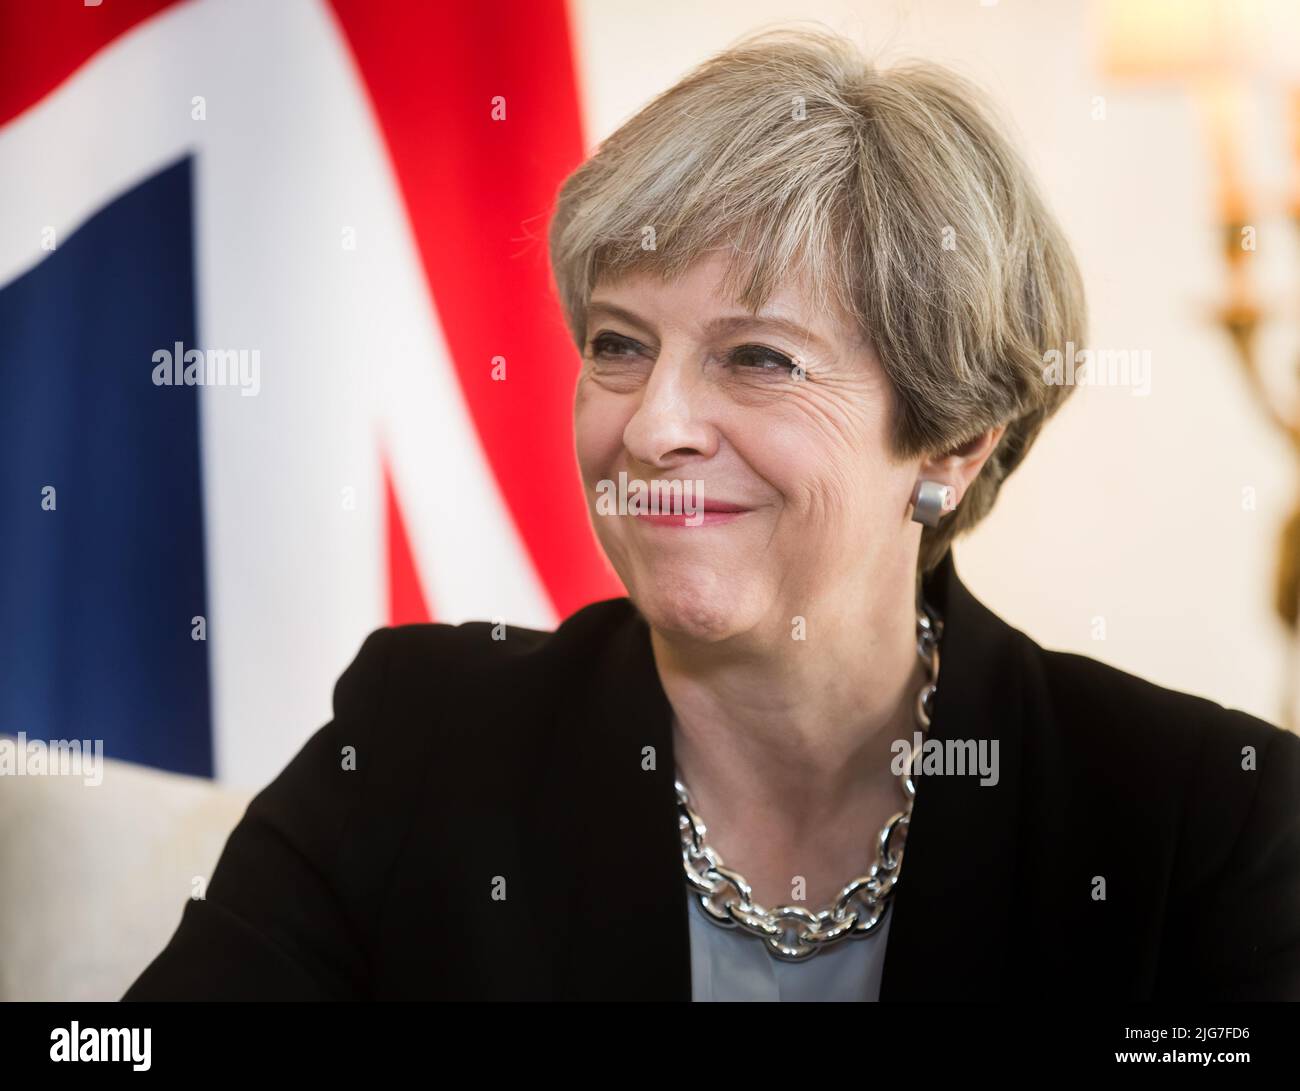 London, Großbritannien. 19. April 2017. Premierministerin des Vereinigten Königreichs Theresa May bei einem offiziellen Treffen mit dem ukrainischen Präsidenten Petro Poroschenko in der Downing Street 10 in London. (Foto von Mykhaylo Palinchak/SOPA Images/Sipa USA) Quelle: SIPA USA/Alamy Live News Stockfoto